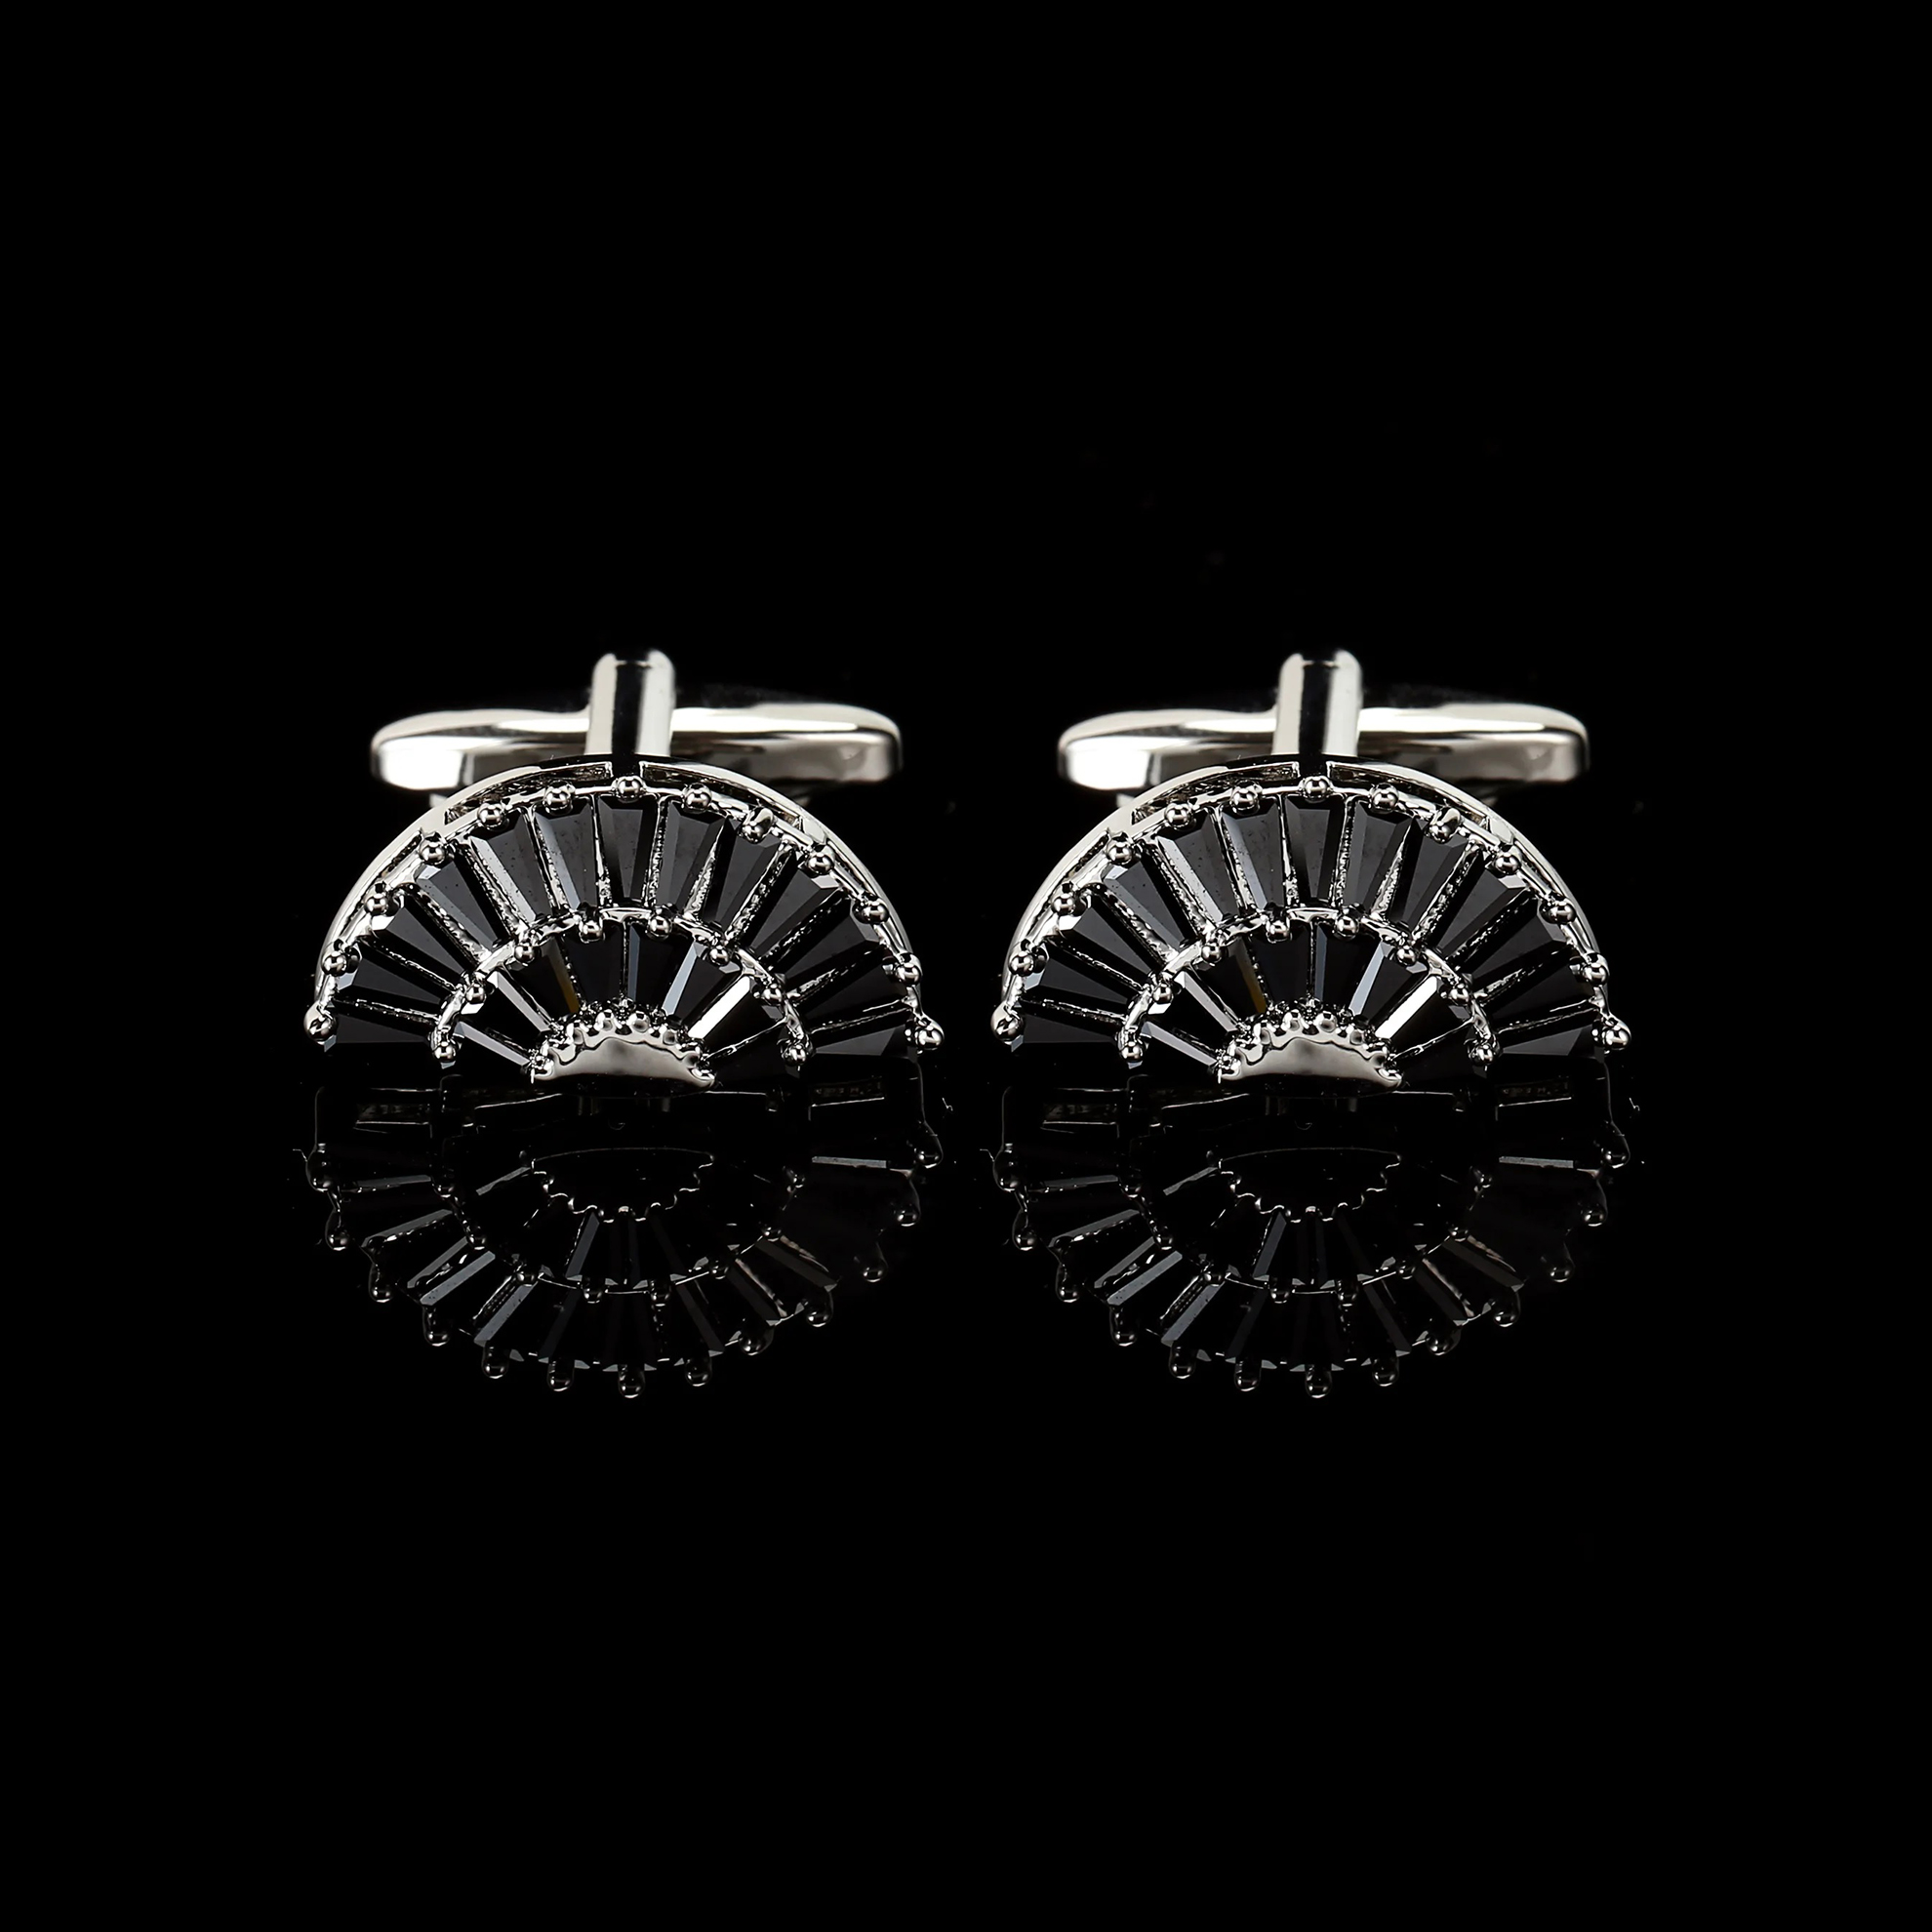 Cufflers Designer Black Fan Sector Crystal Cufflinks Elegant Zircon Design Free Gift Box – CU-3014-A